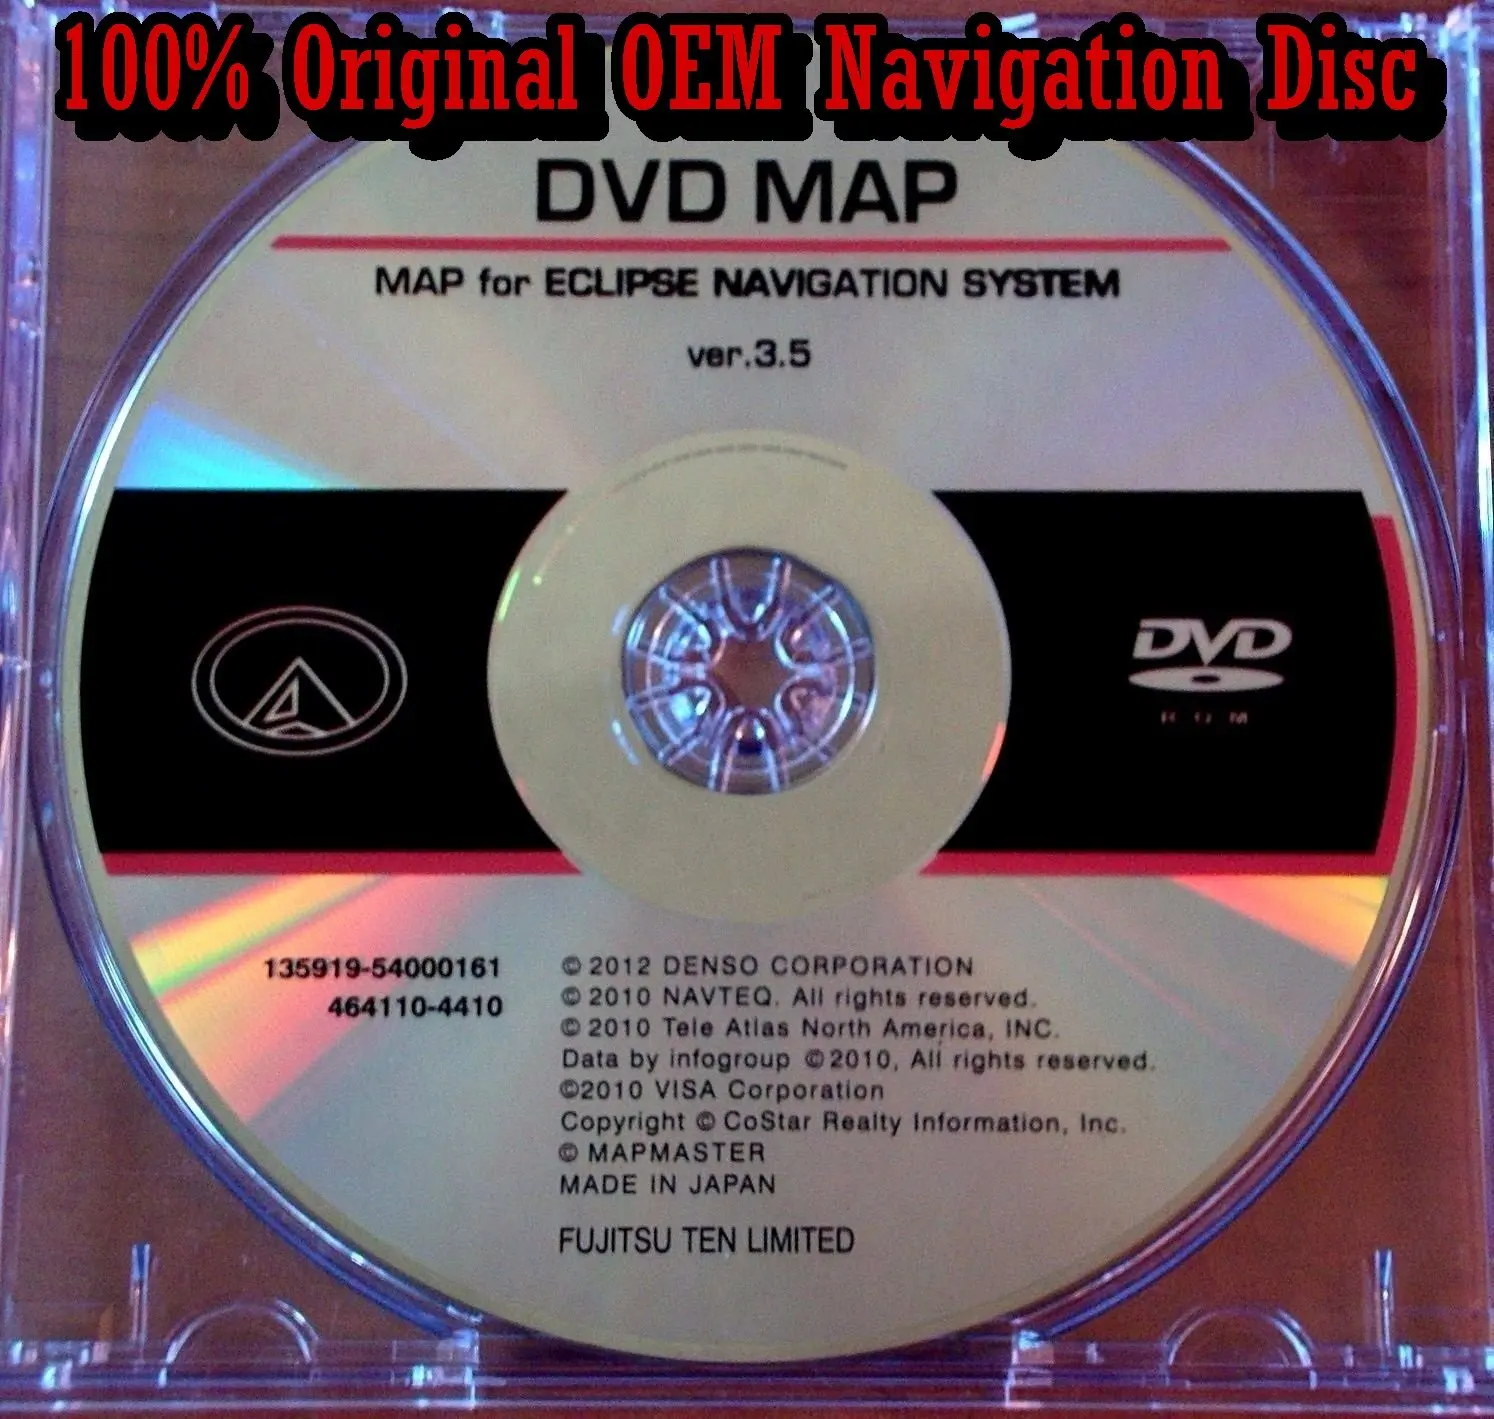 Buy MDV11D Eclipse Navigation Update DVD version 2.5 Disc for Eclipse